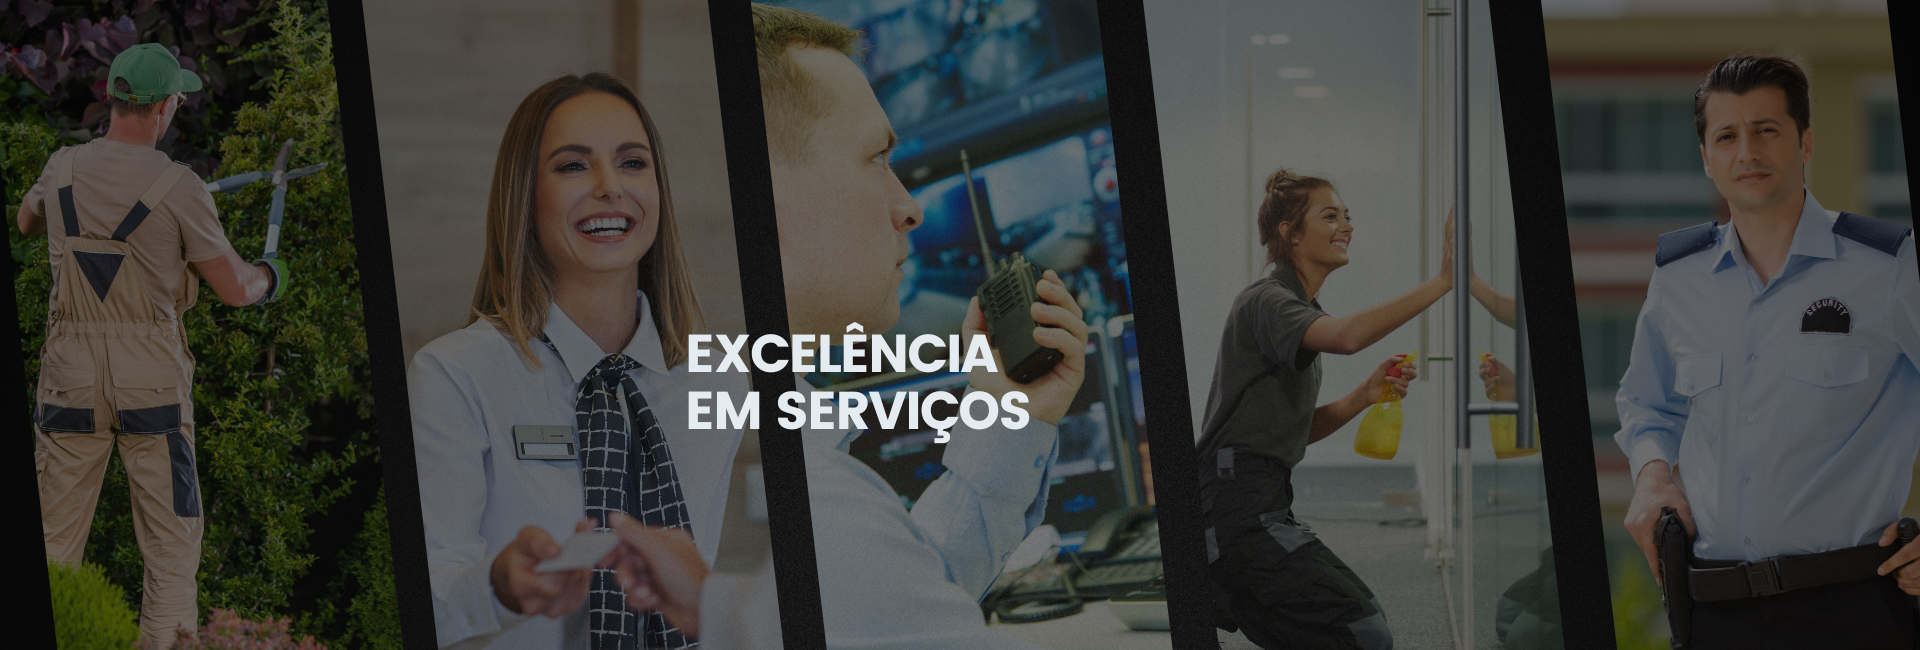 Portaria, Segurana, Limpeza, Facilities, Servios Condominiais e Empresariais - 